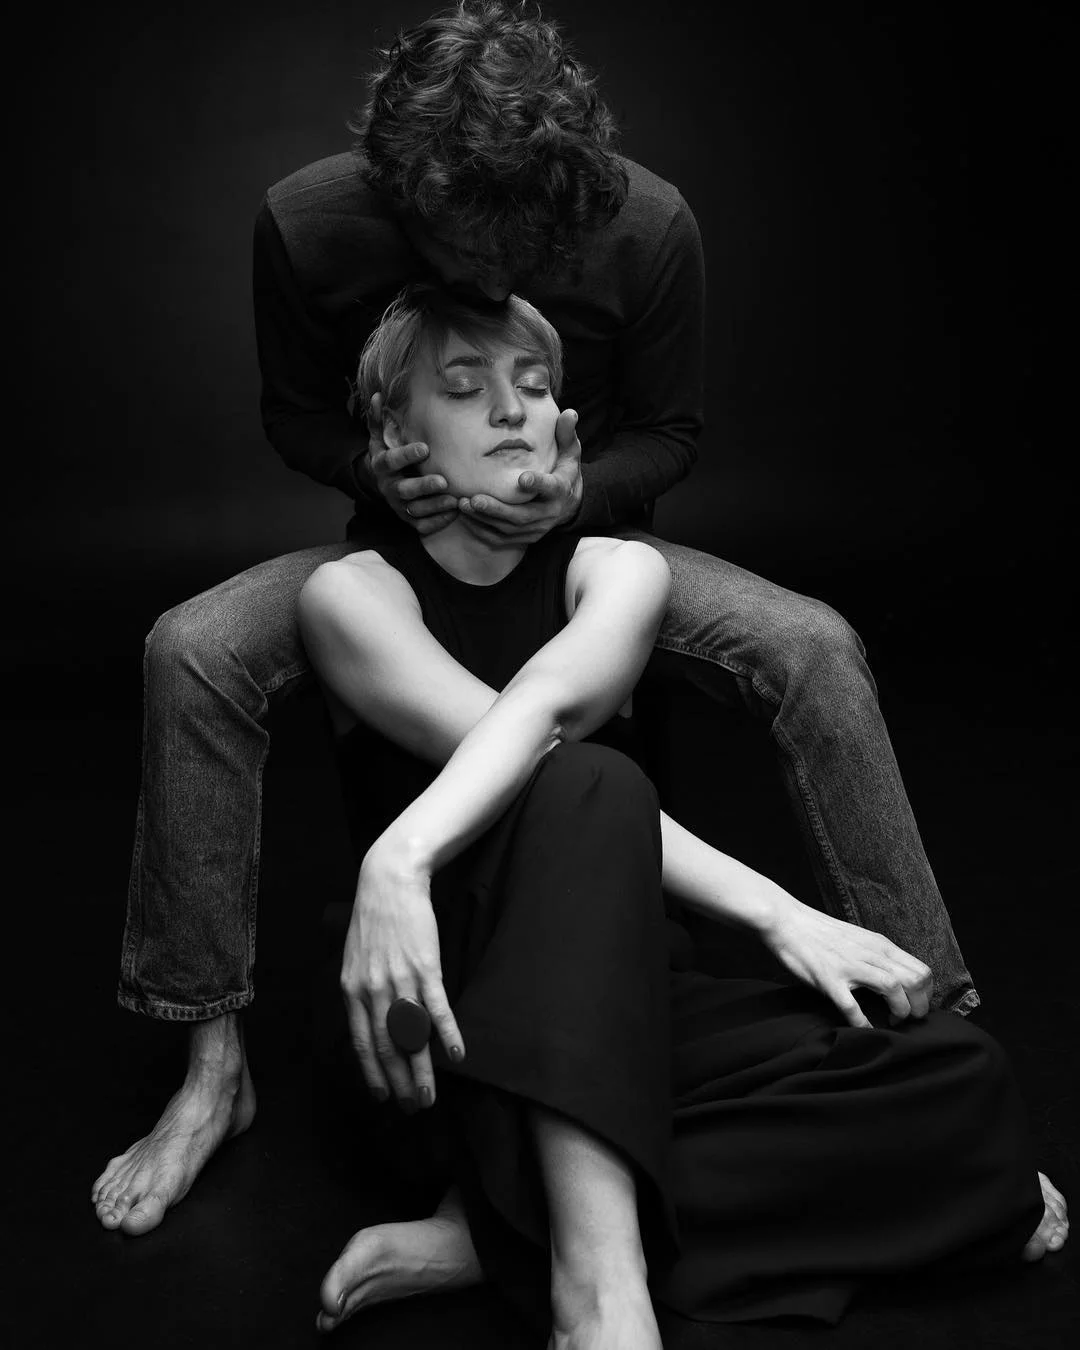 Віра Кекелія в чуттєвій фотосесії з коханим - це справжня естетична насолода - фото 425098